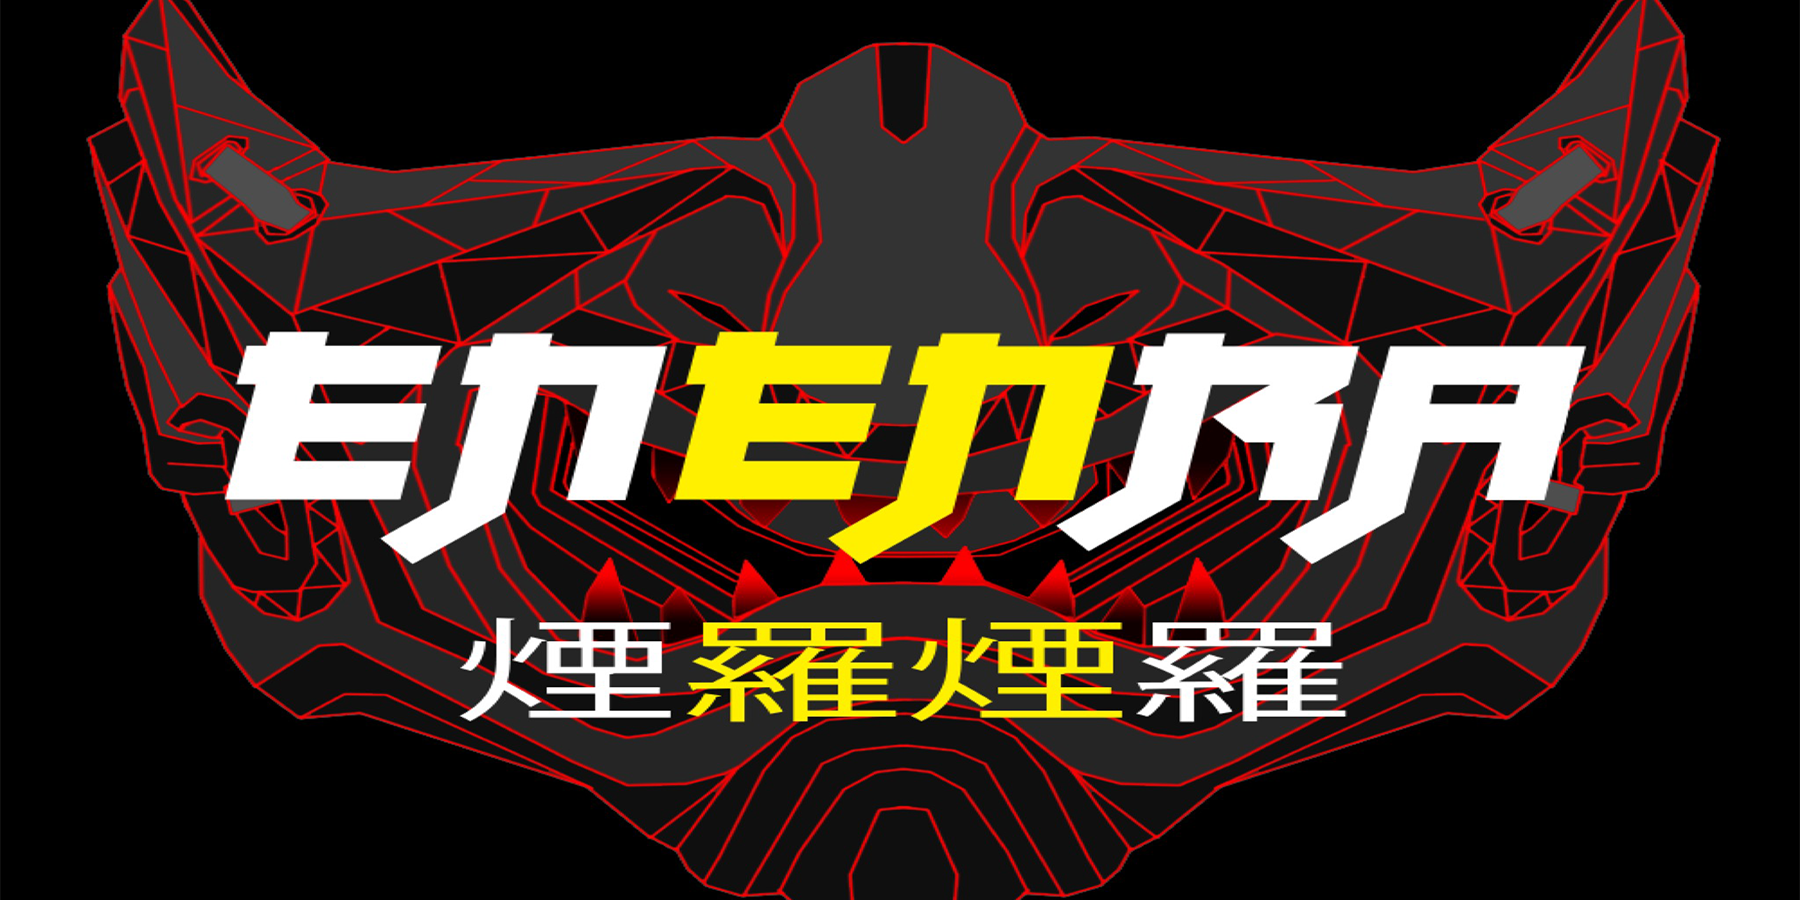 ENENRA Logo Image